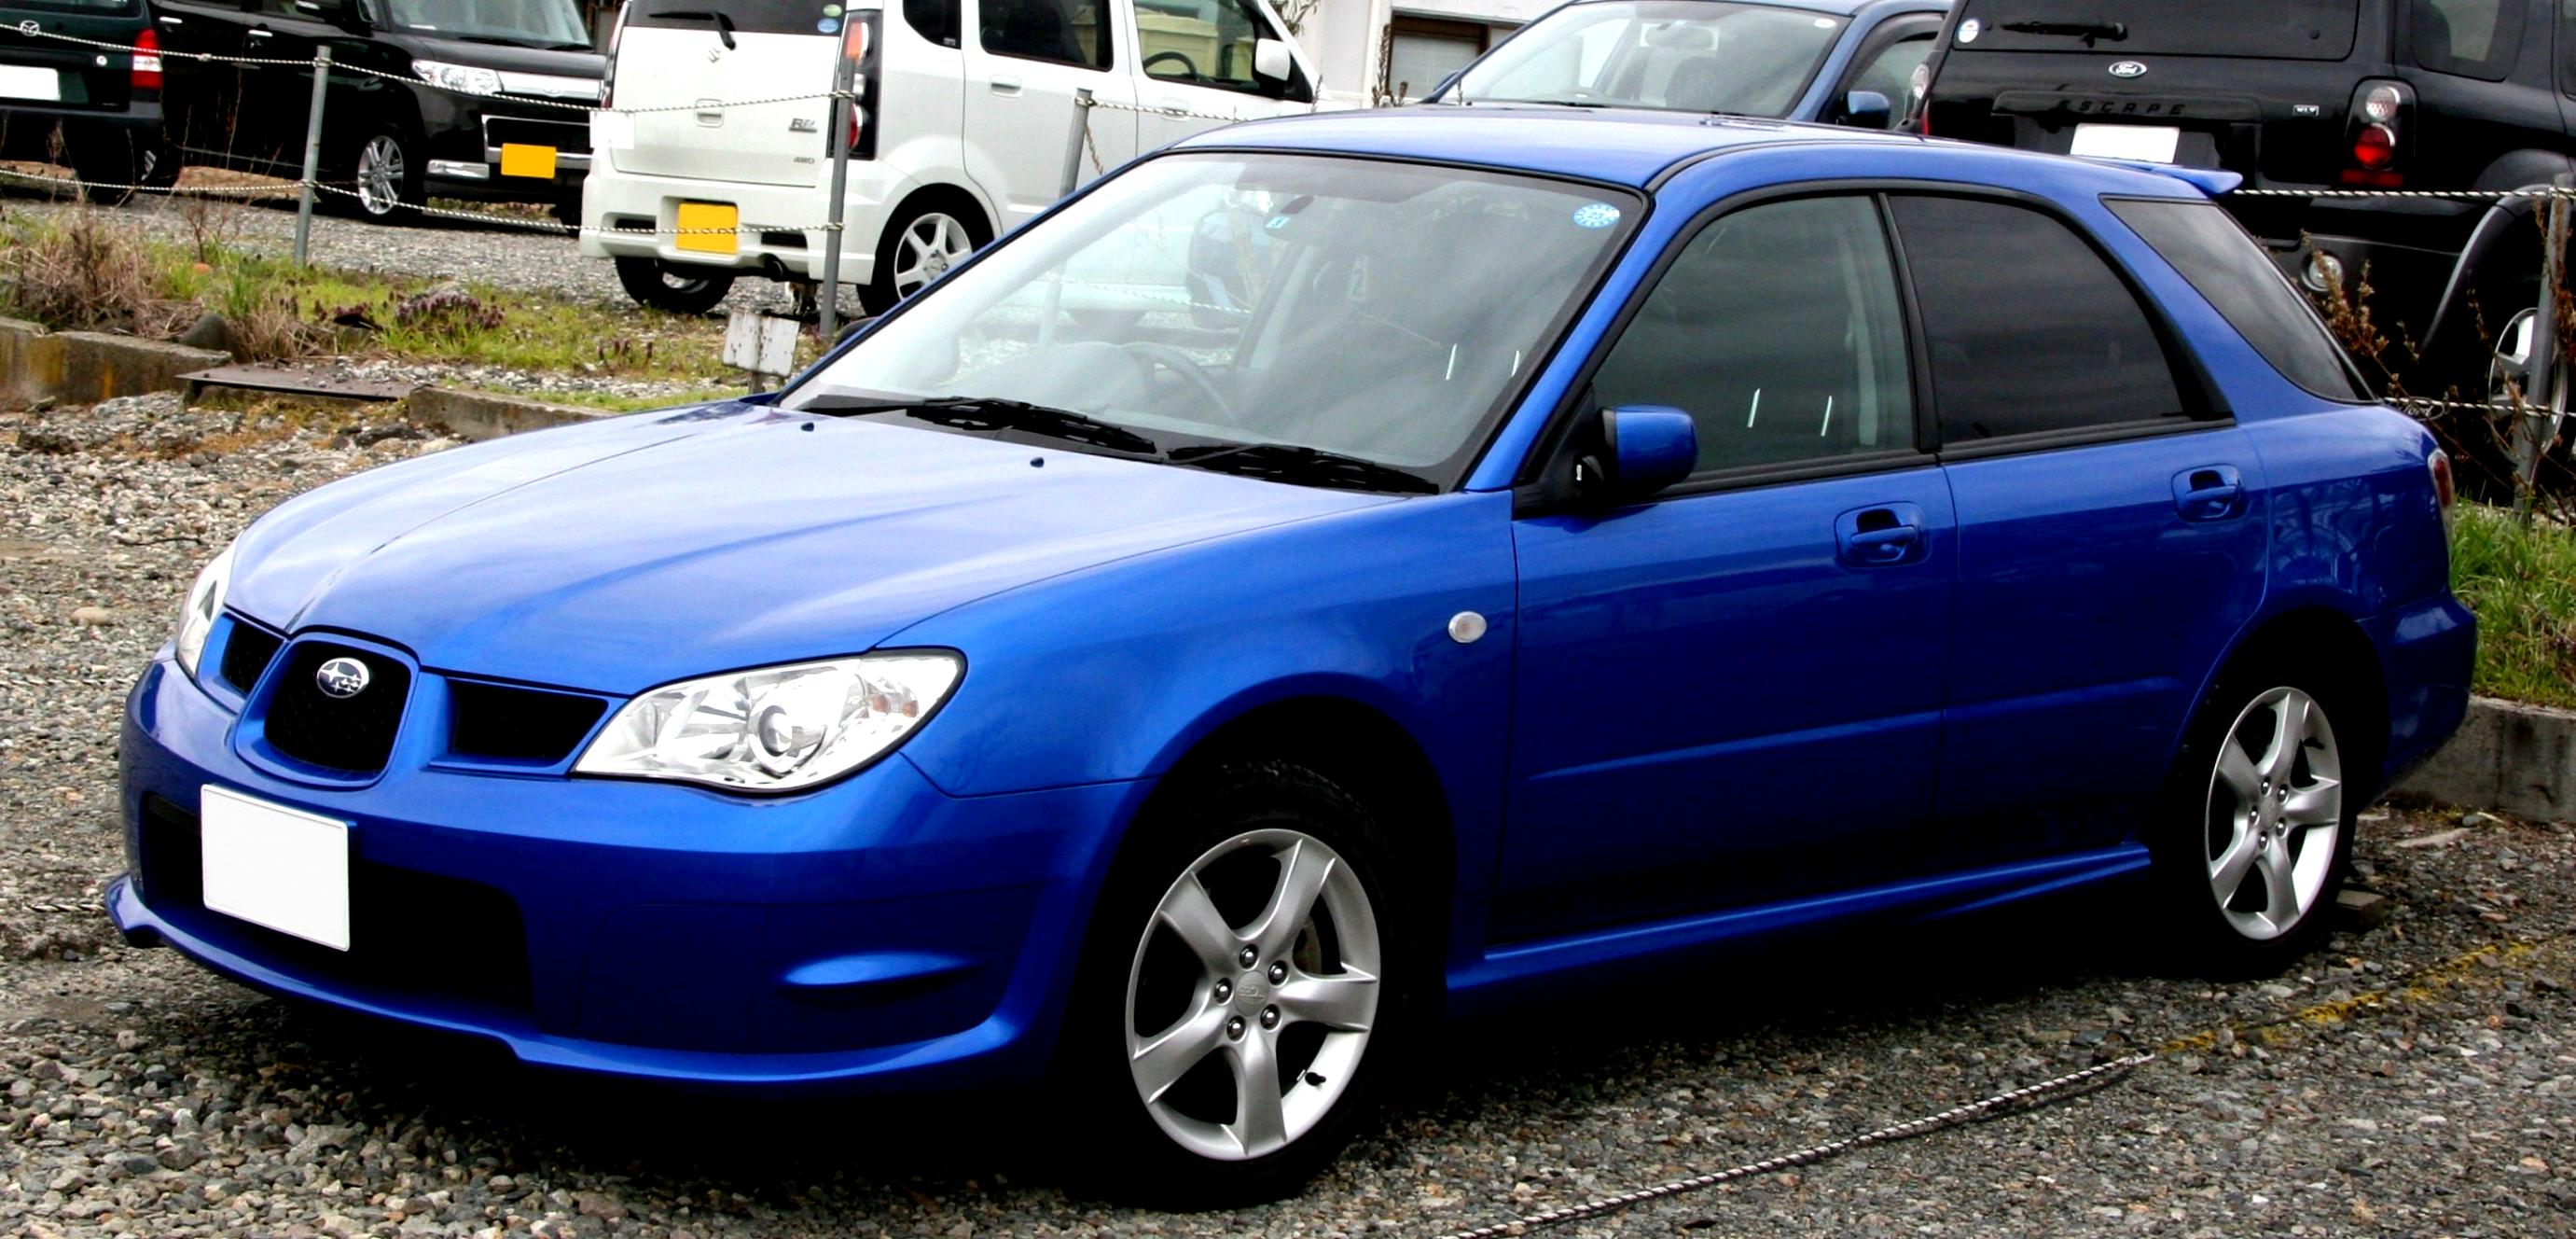 Subaru Impreza 2005 on